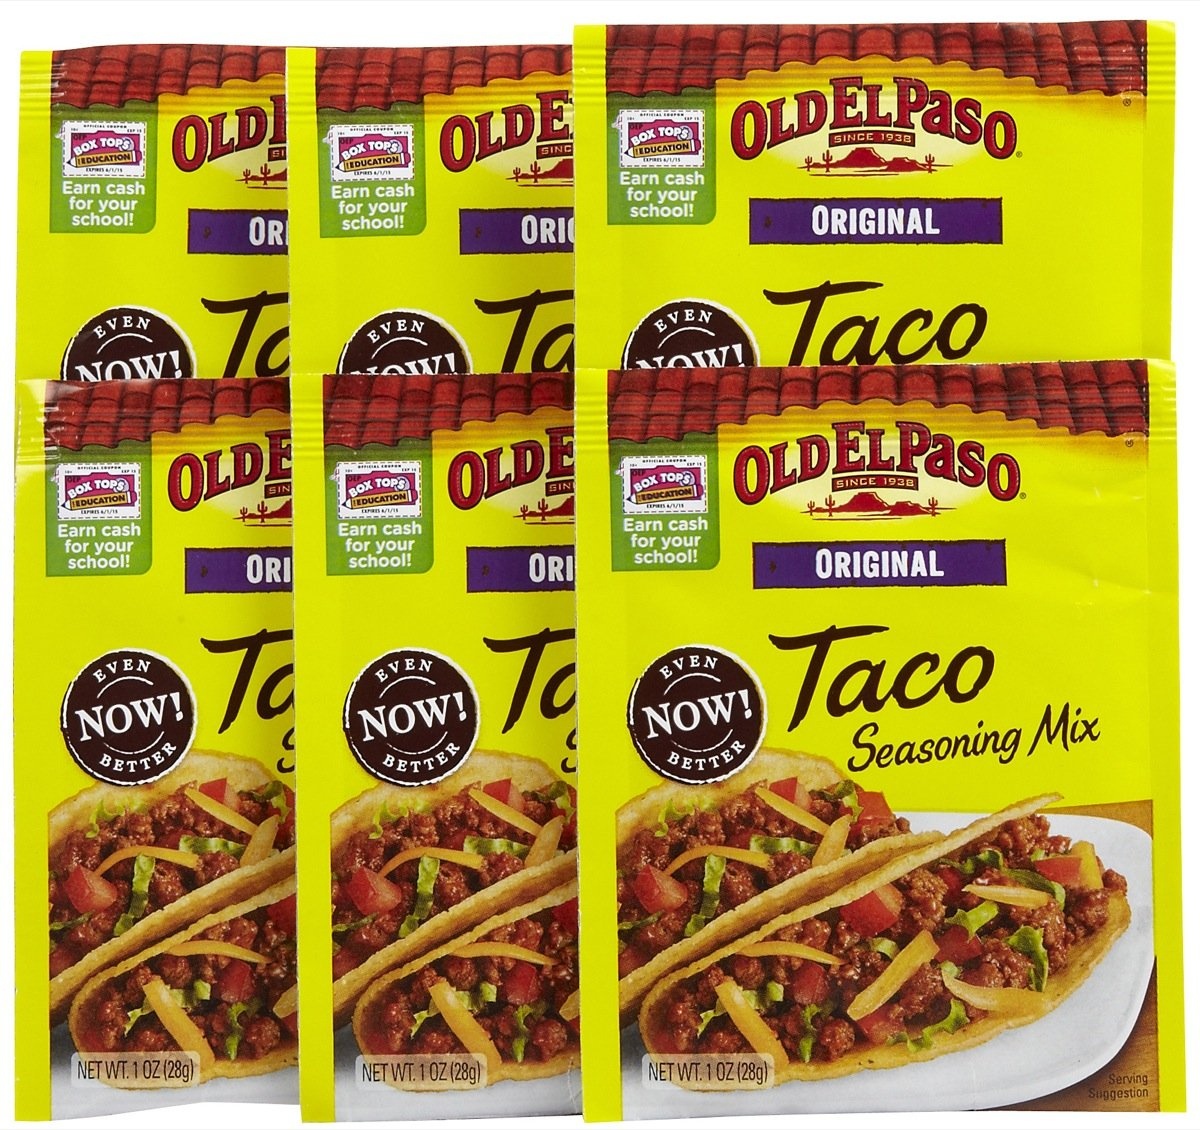 New Old El Paso Coupon - Free Taco Seasoning At Many Stores - Ftm - Free Printable Old El Paso Coupons